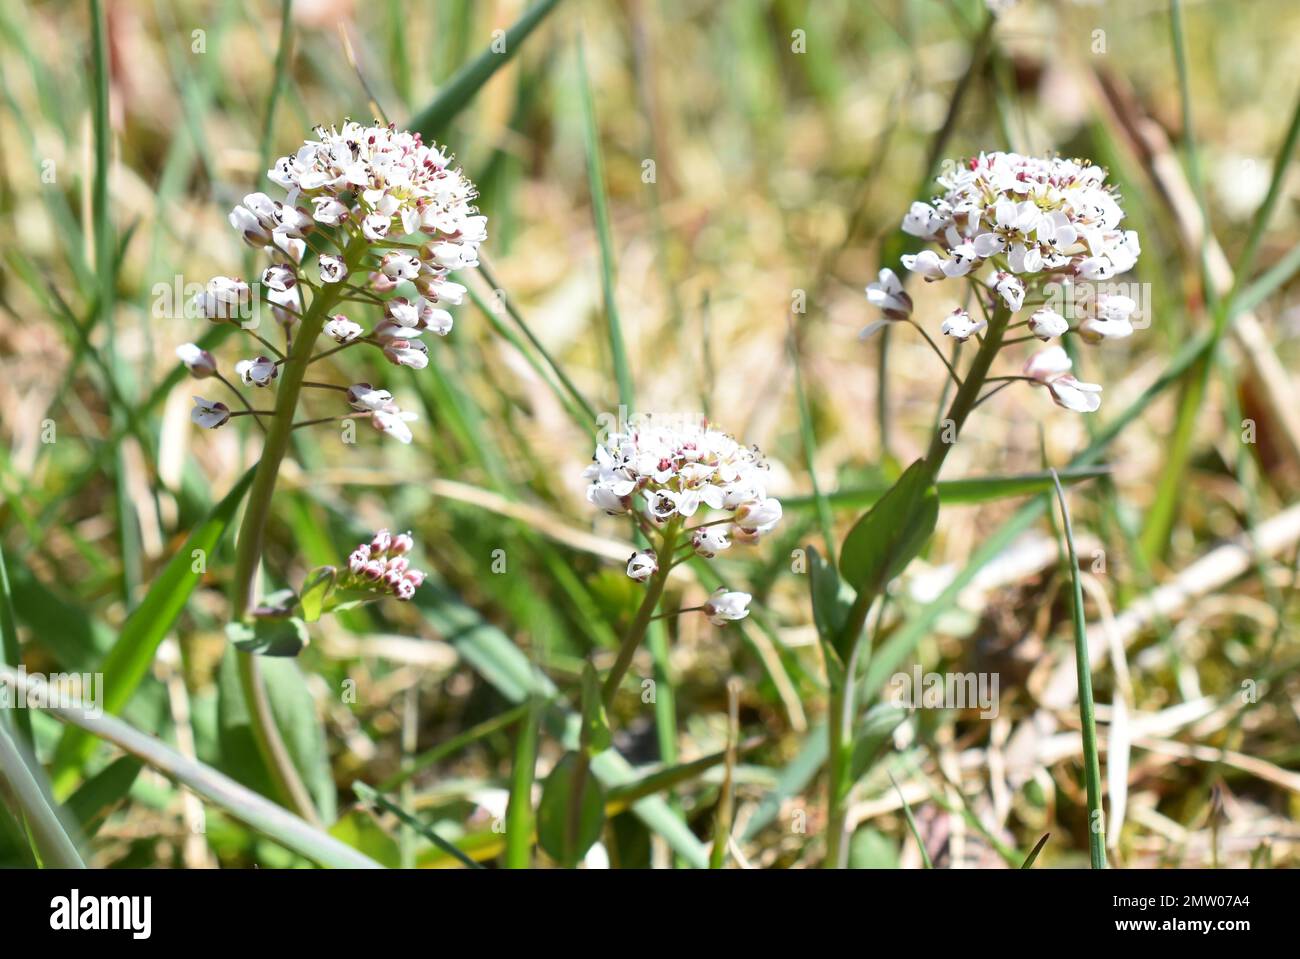 Alpine Penny-cress Noccaea caerulescens among grass Stock Photo